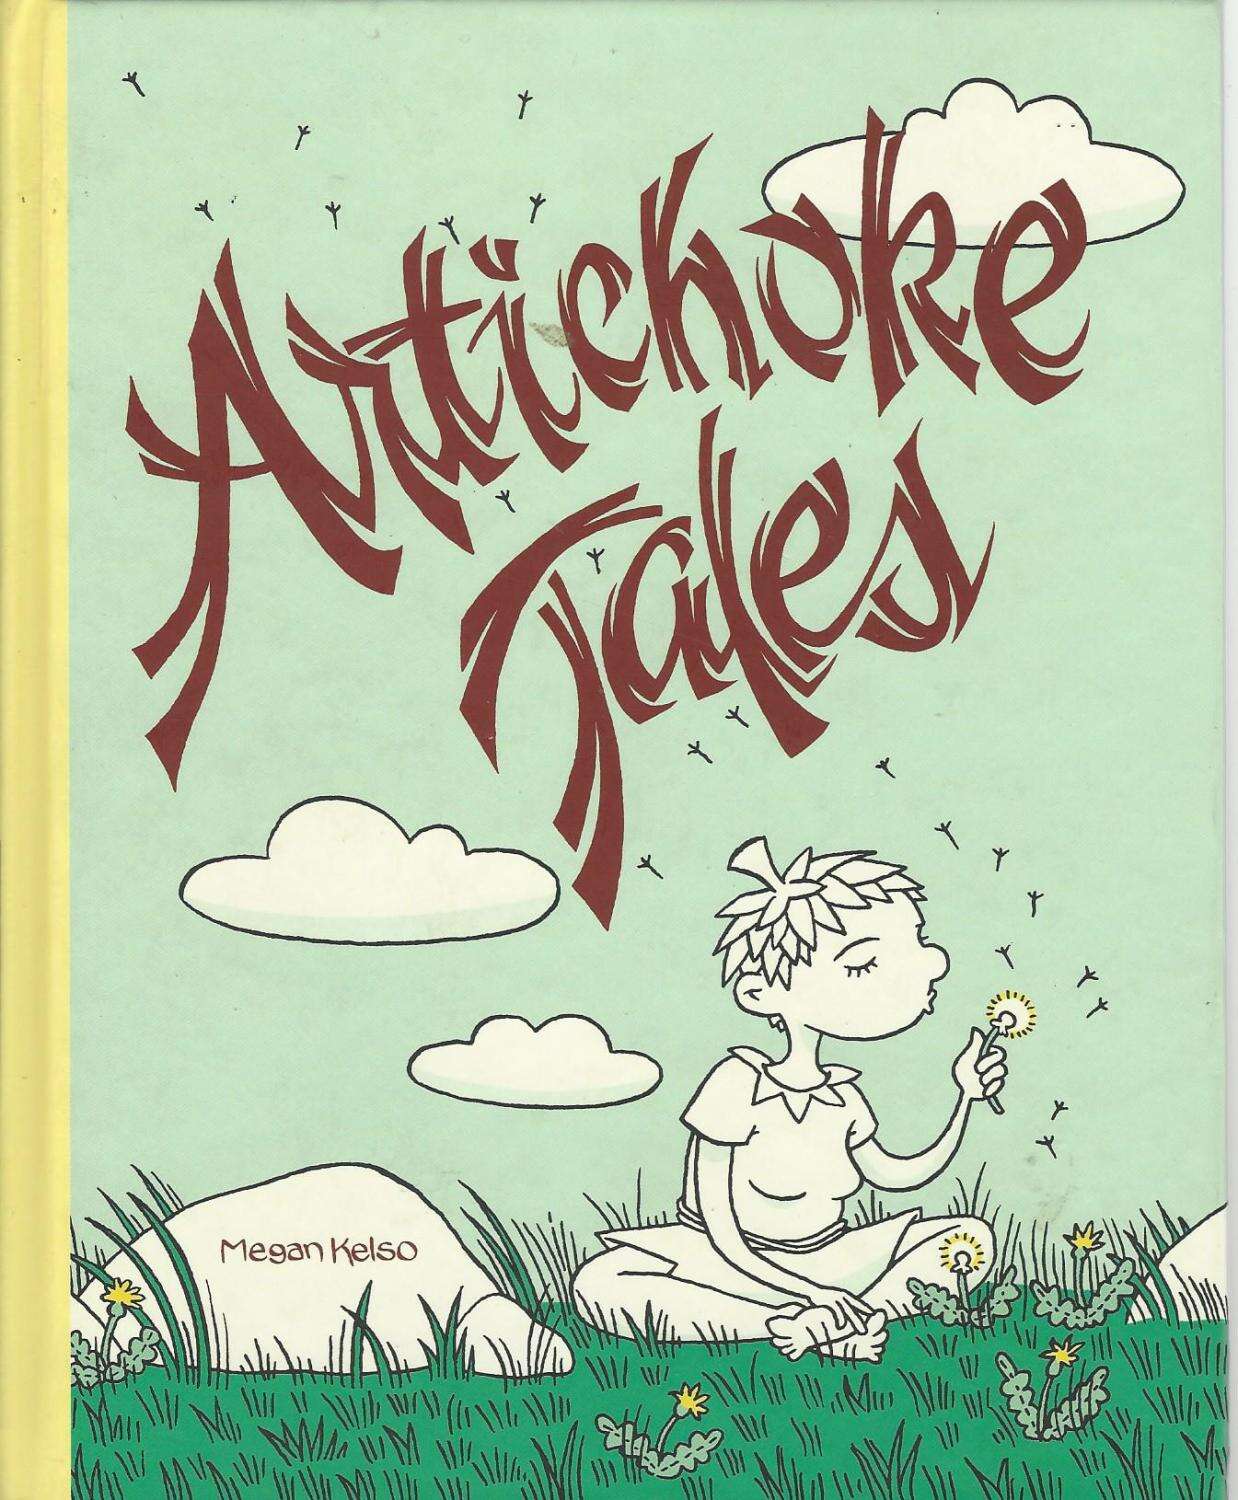 artichoke tales